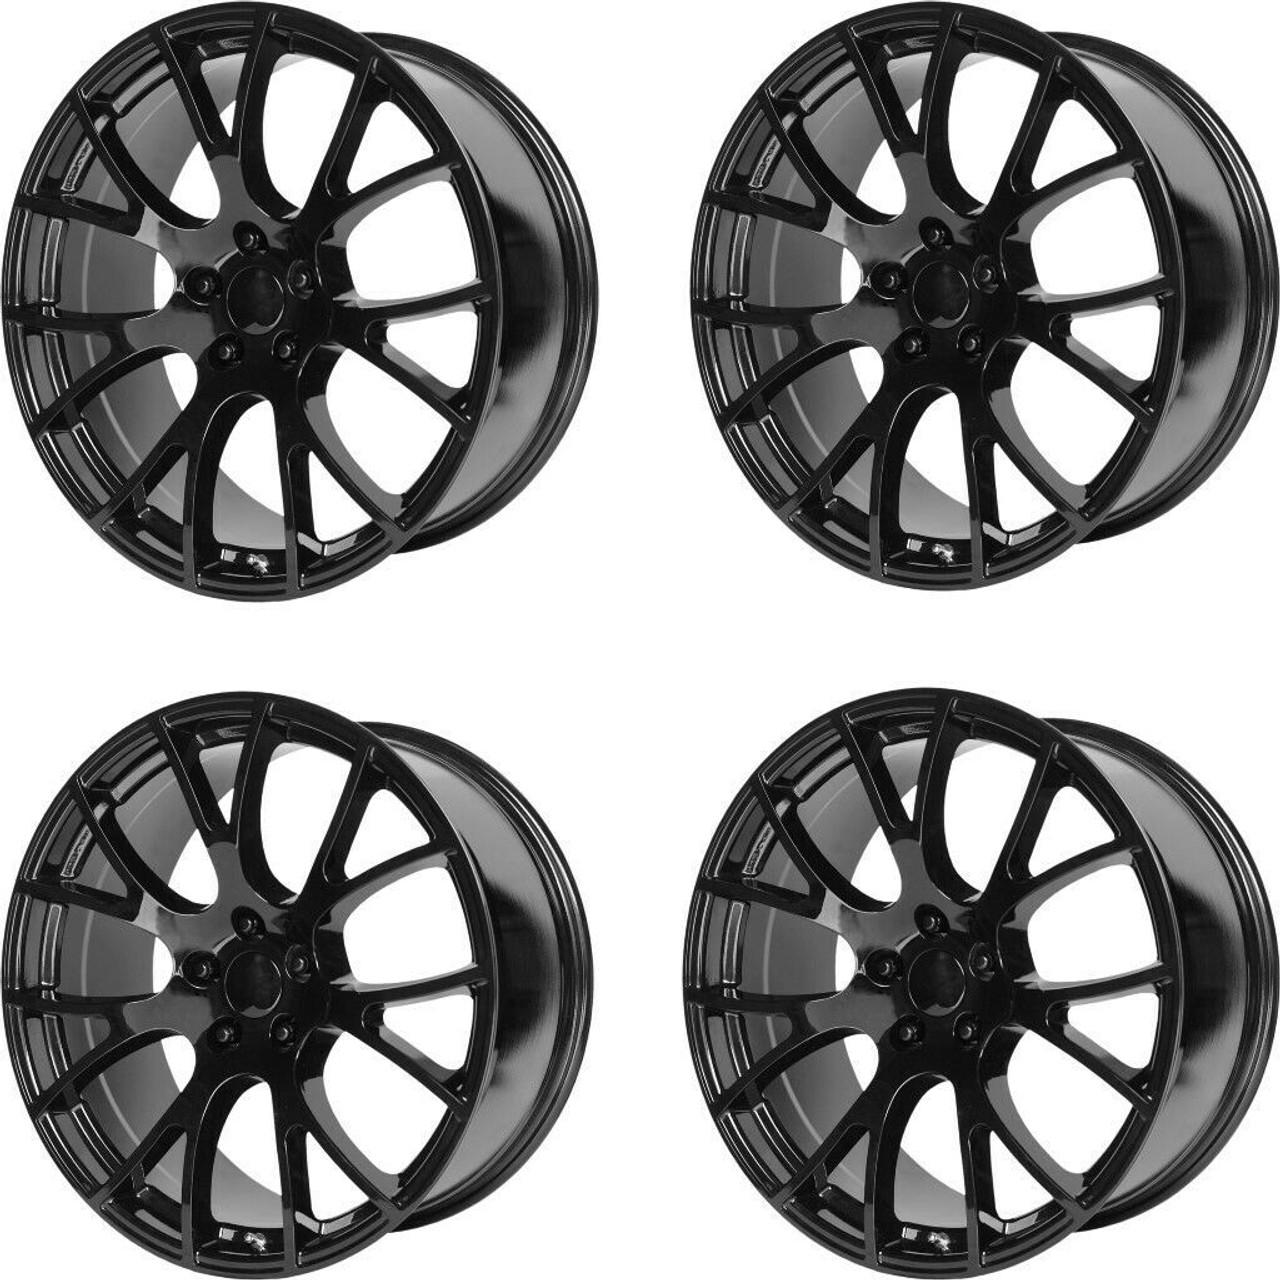 Set 4 Performance Replicas PR161 22x11 5x115 Gloss Black Wheels 22" 18mm Rims